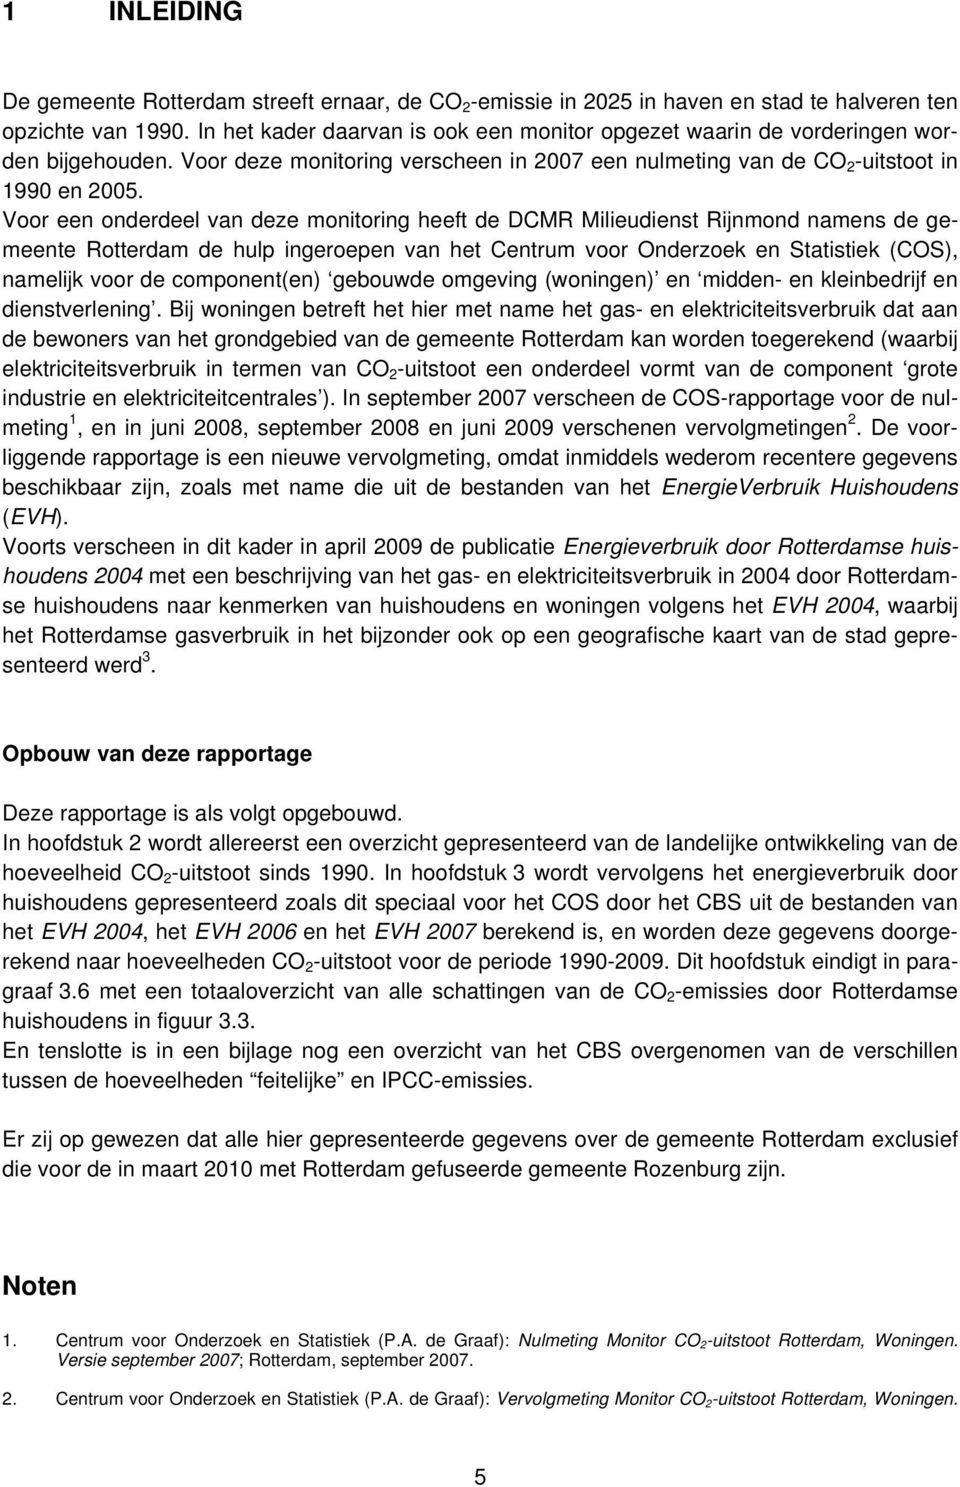 Voor een onderdeel van deze monitoring heeft de DCMR Milieudienst Rijnmond namens de gemeente Rotterdam de hulp ingeroepen van het Centrum voor Onderzoek en Statistiek (COS), namelijk voor de